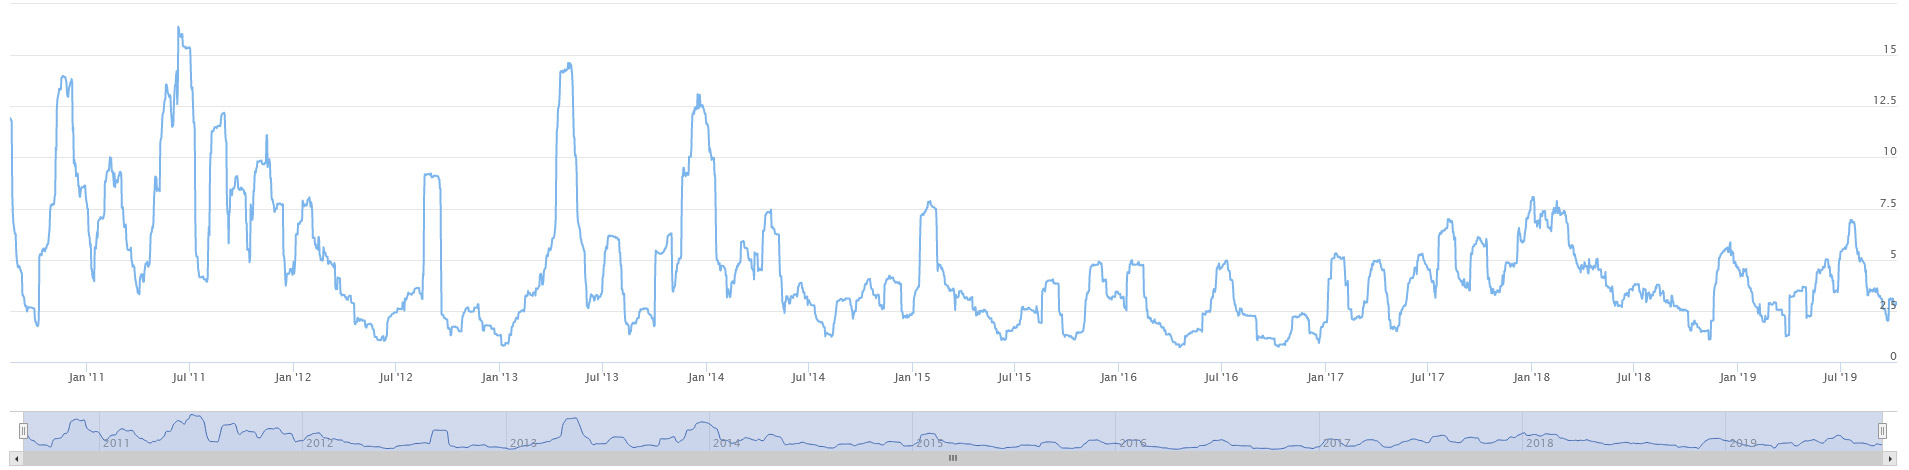 Bitcoin Volatilität auf einem Graphen dargestellt.